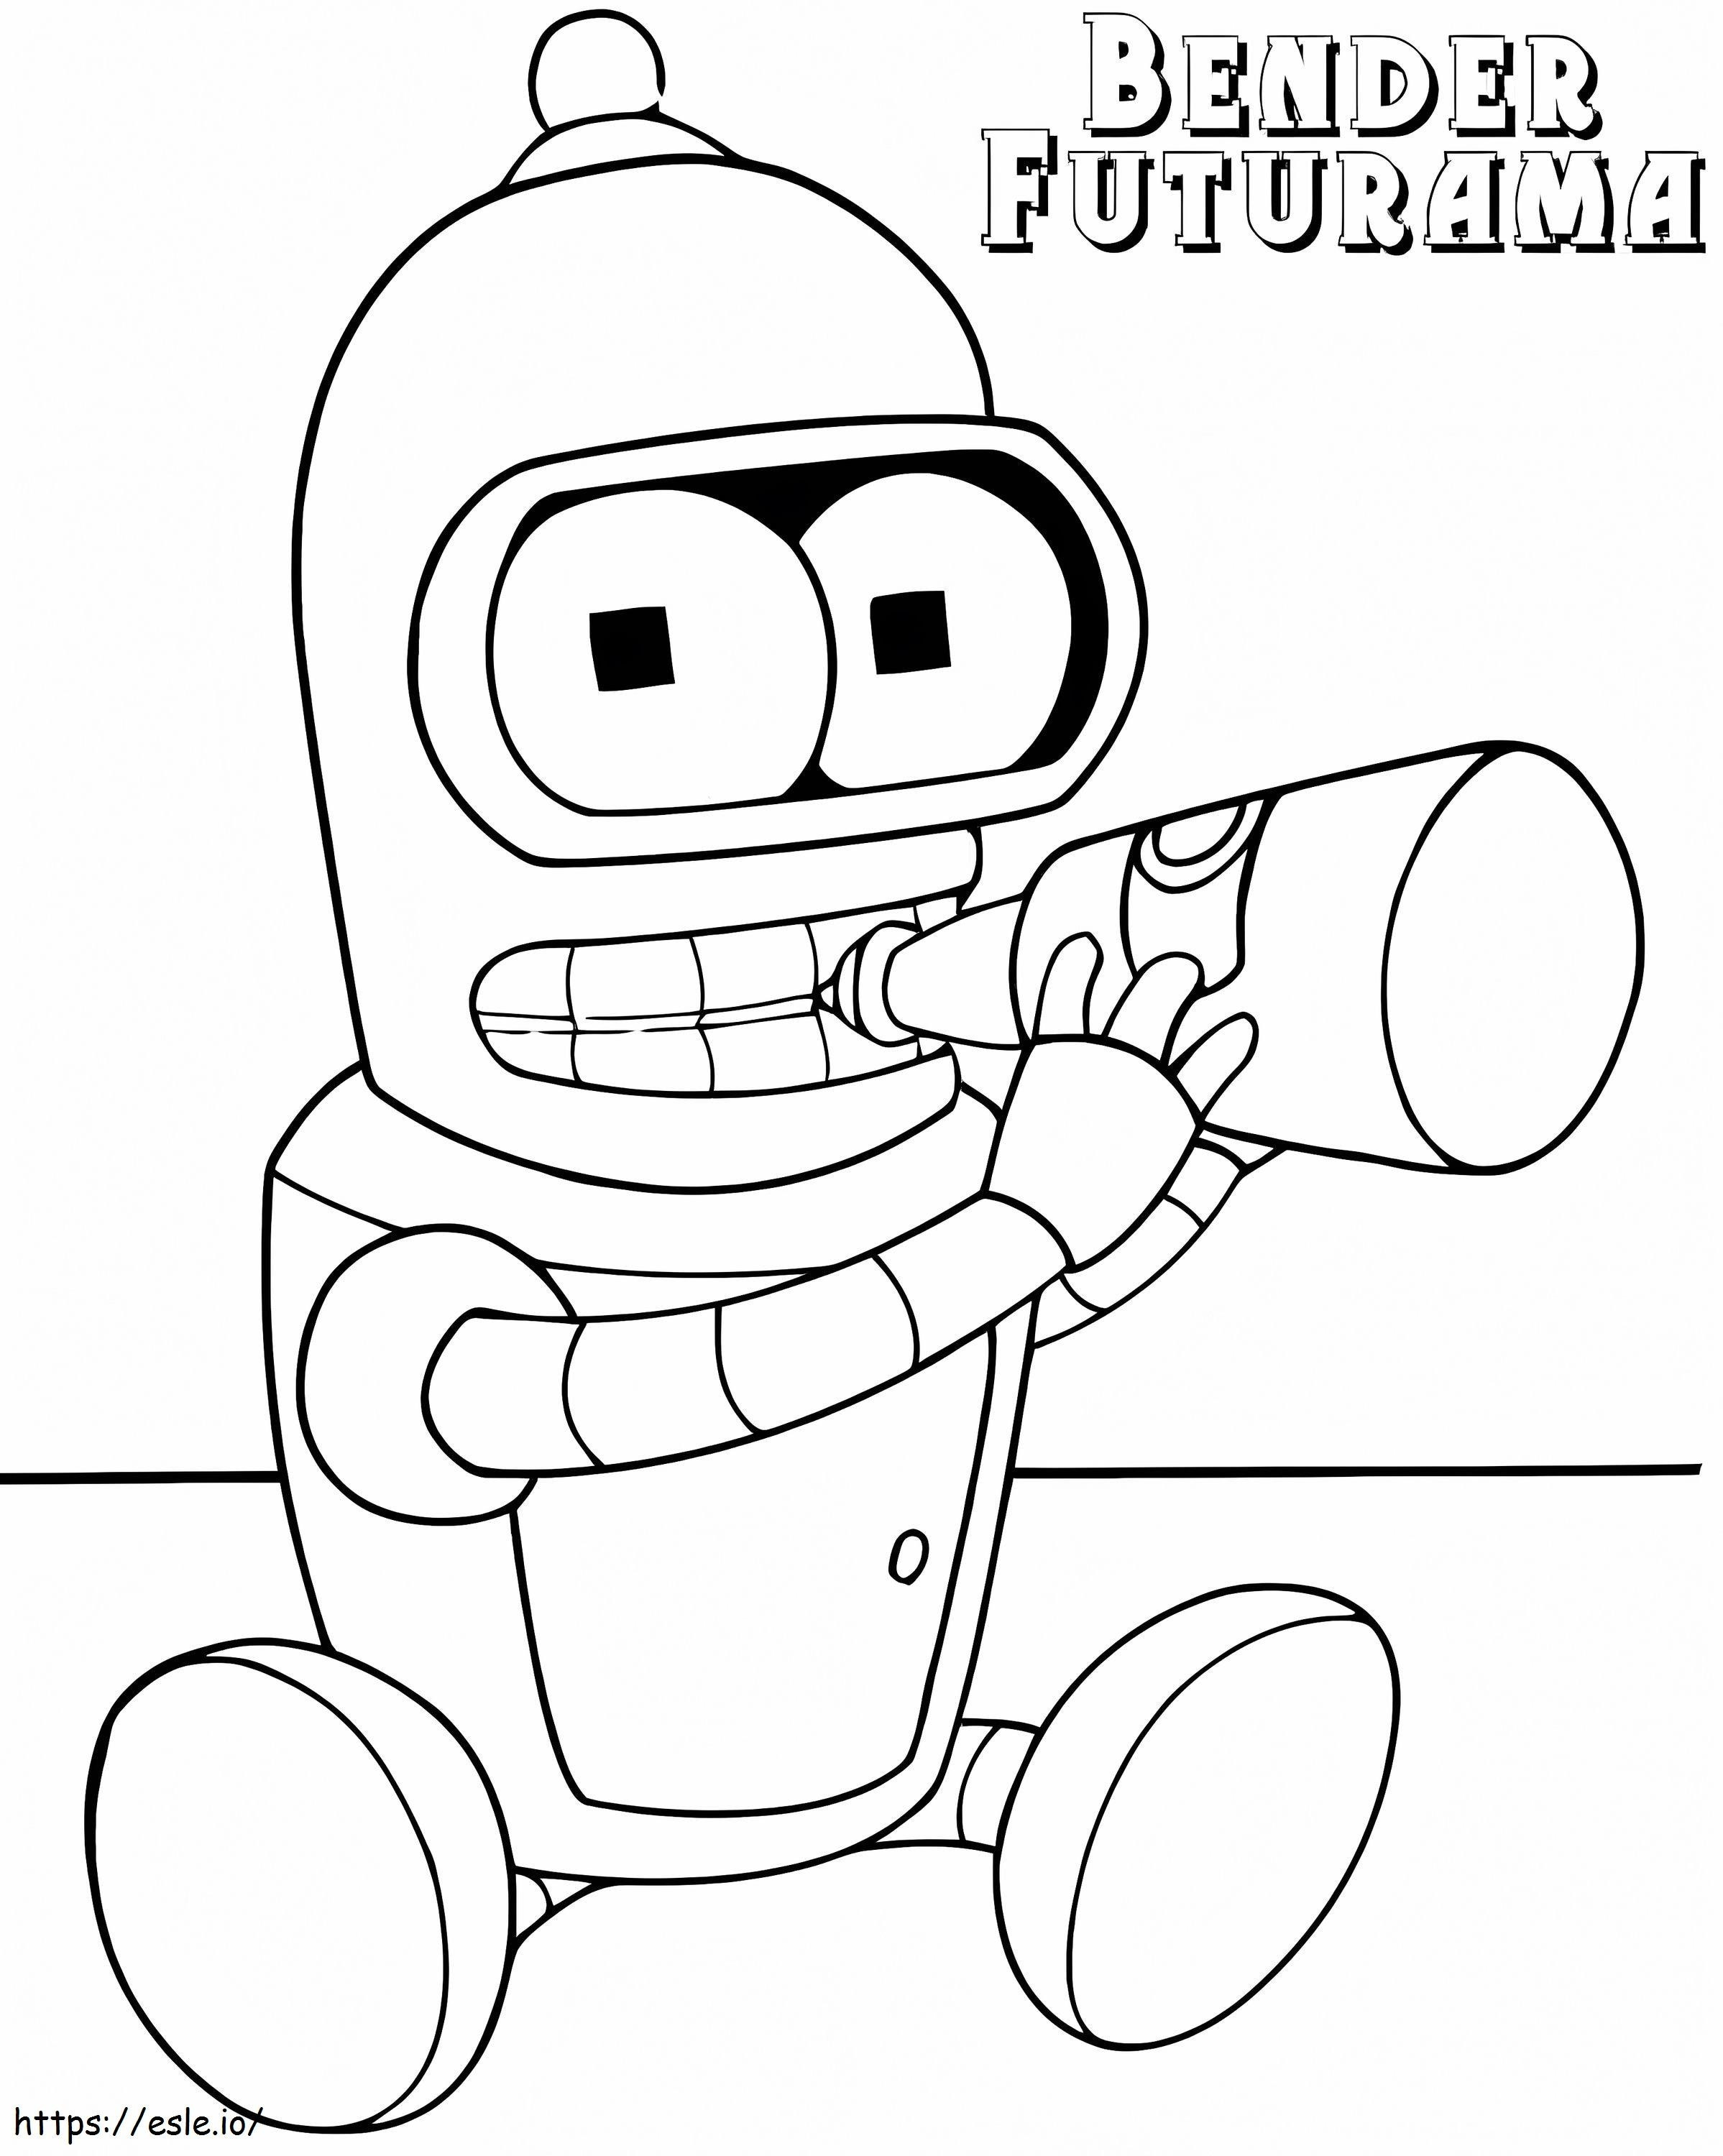 Bebê Bender de Futurama para colorir